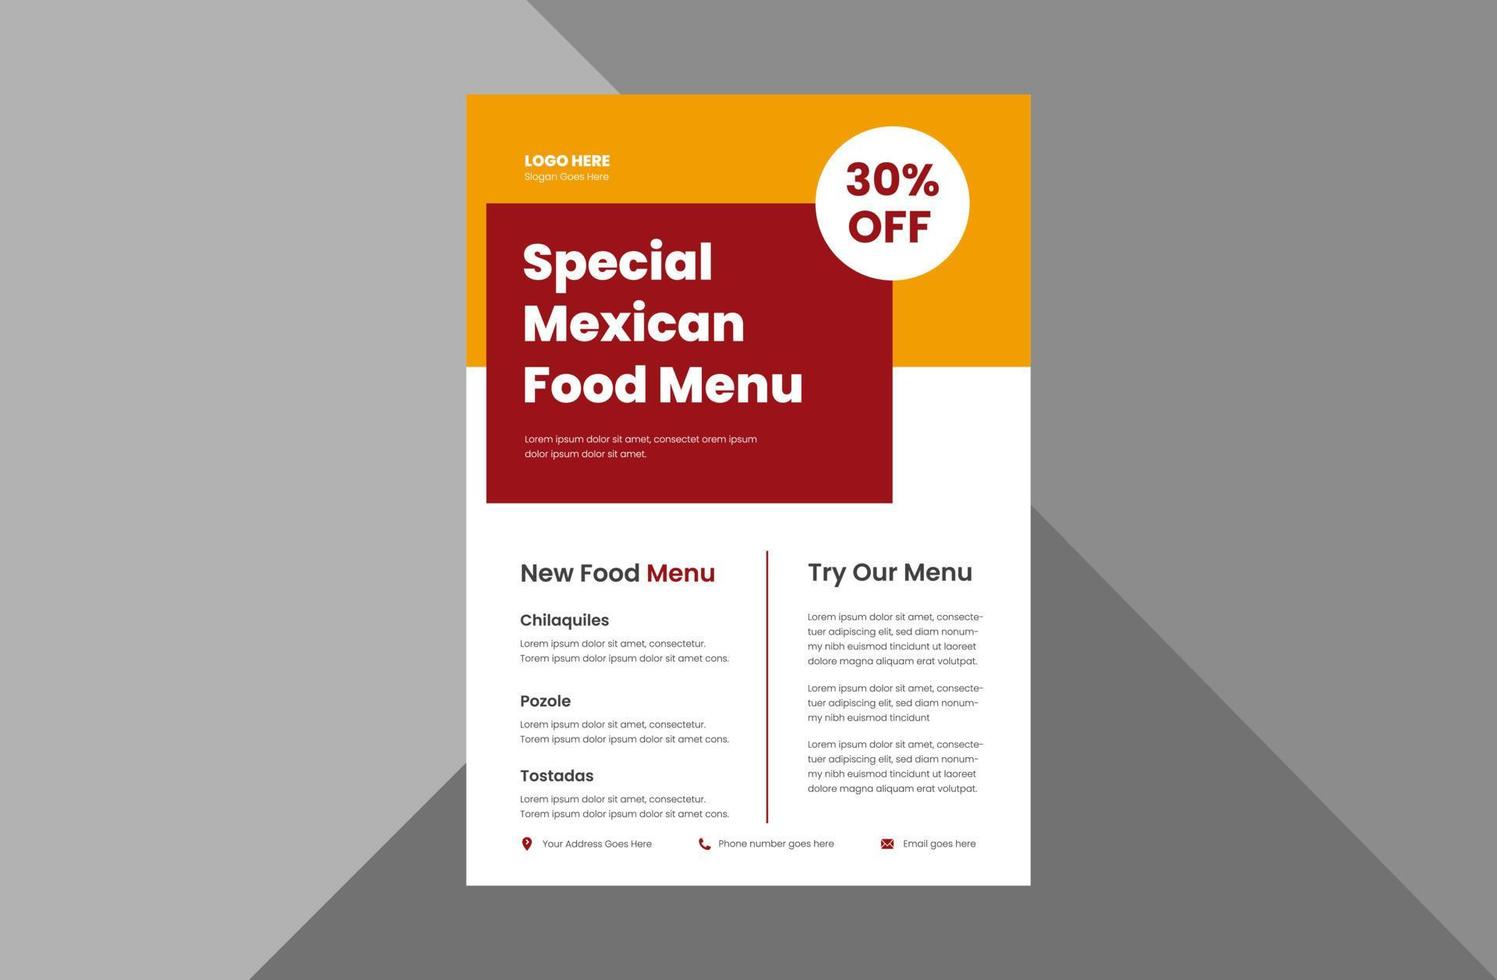 mexikansk matmeny flygblad designmall. speciell mexikansk matrestaurang flygblad designmall. a4-mall, broschyrdesign, omslag, flygblad, affisch, tryckklar vektor